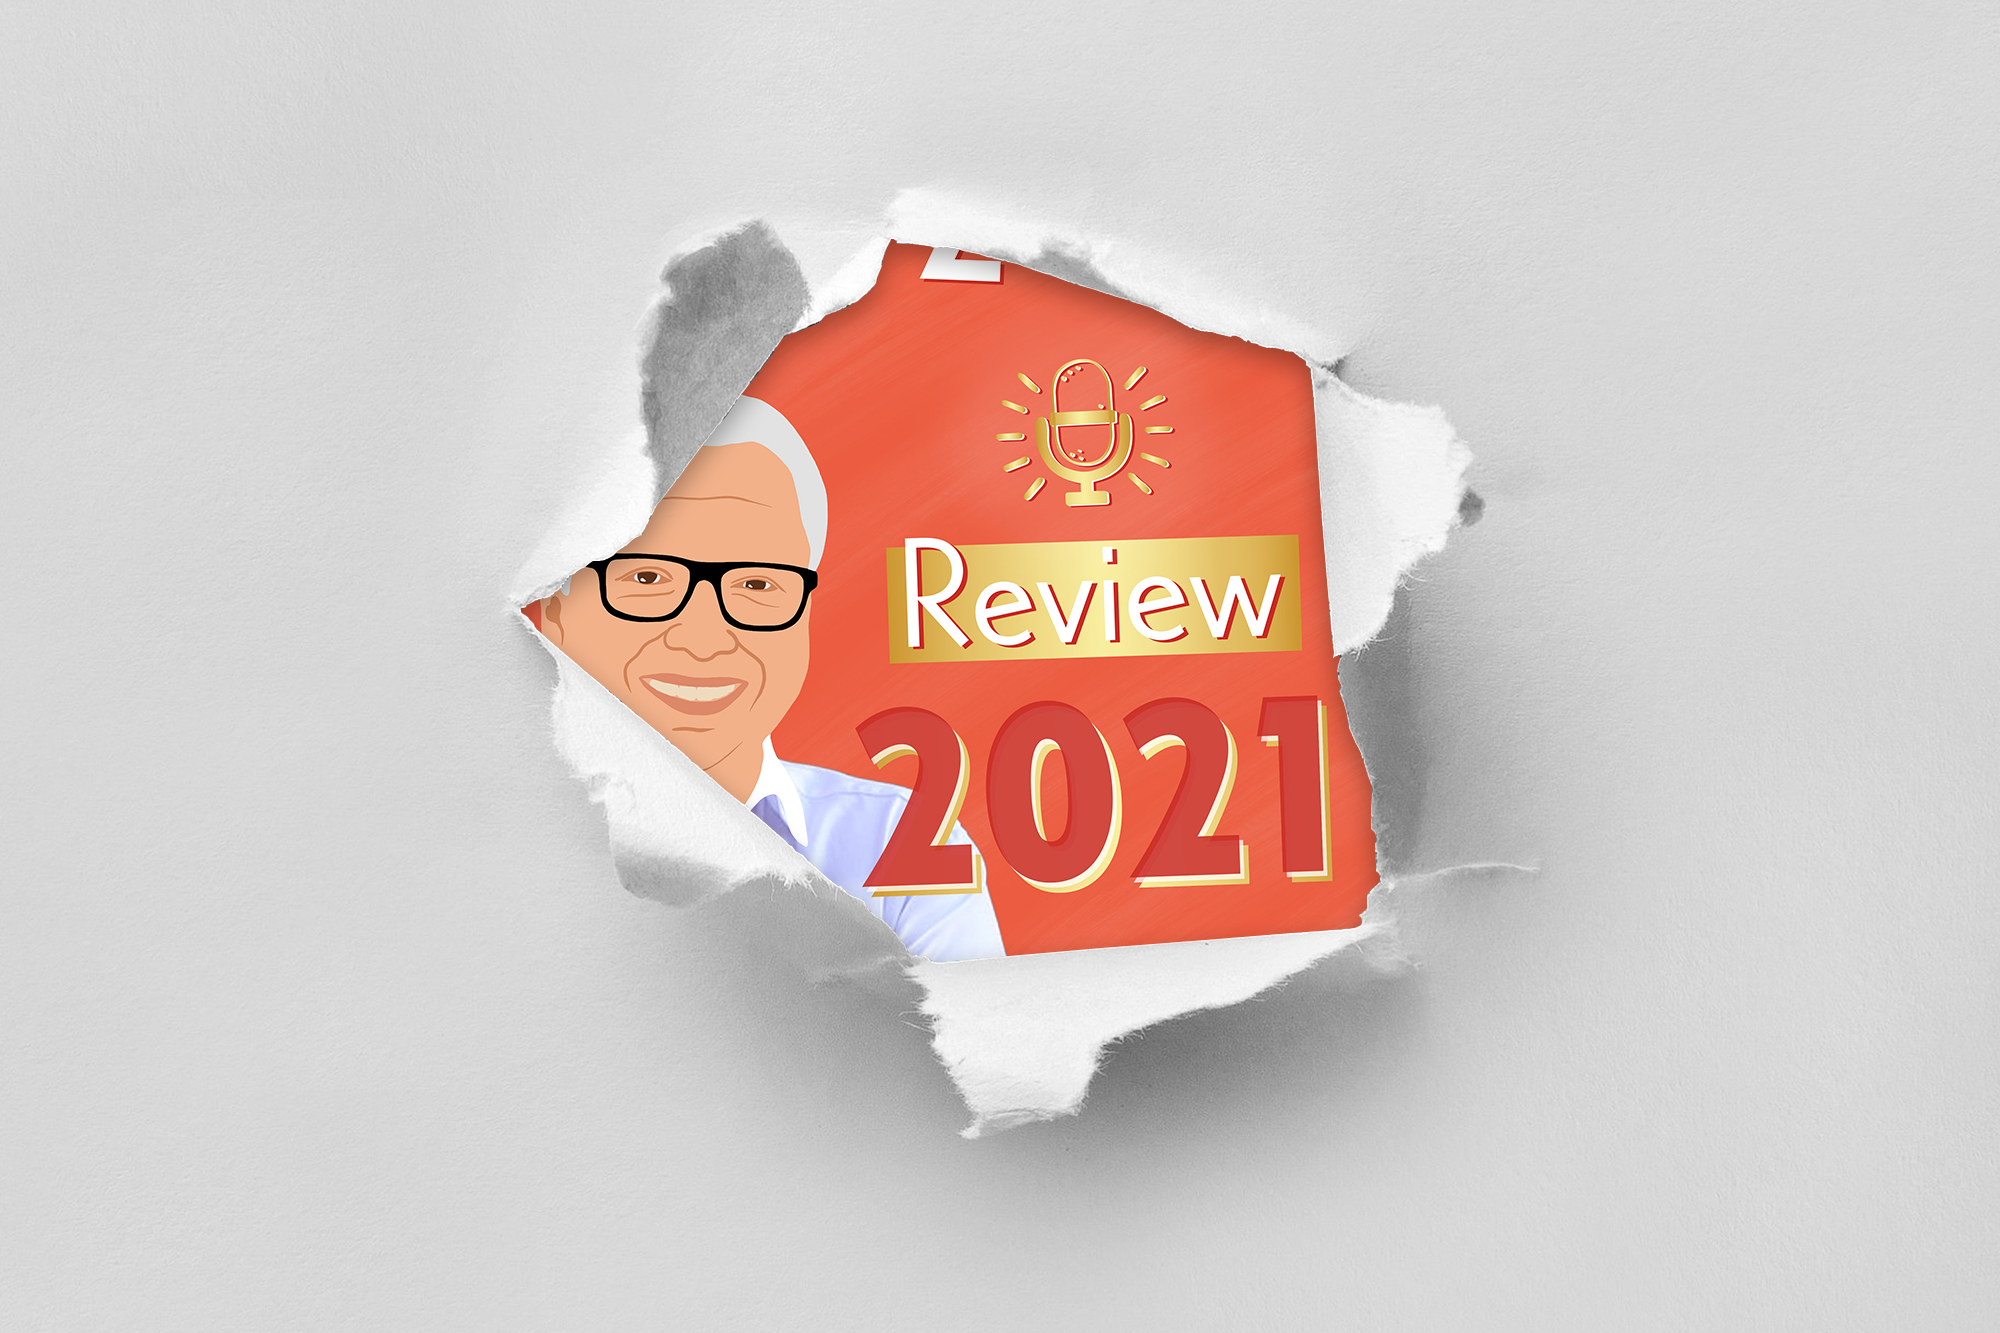 Review 2021: Martin Hirsch – Neue Gesundheit durch KI